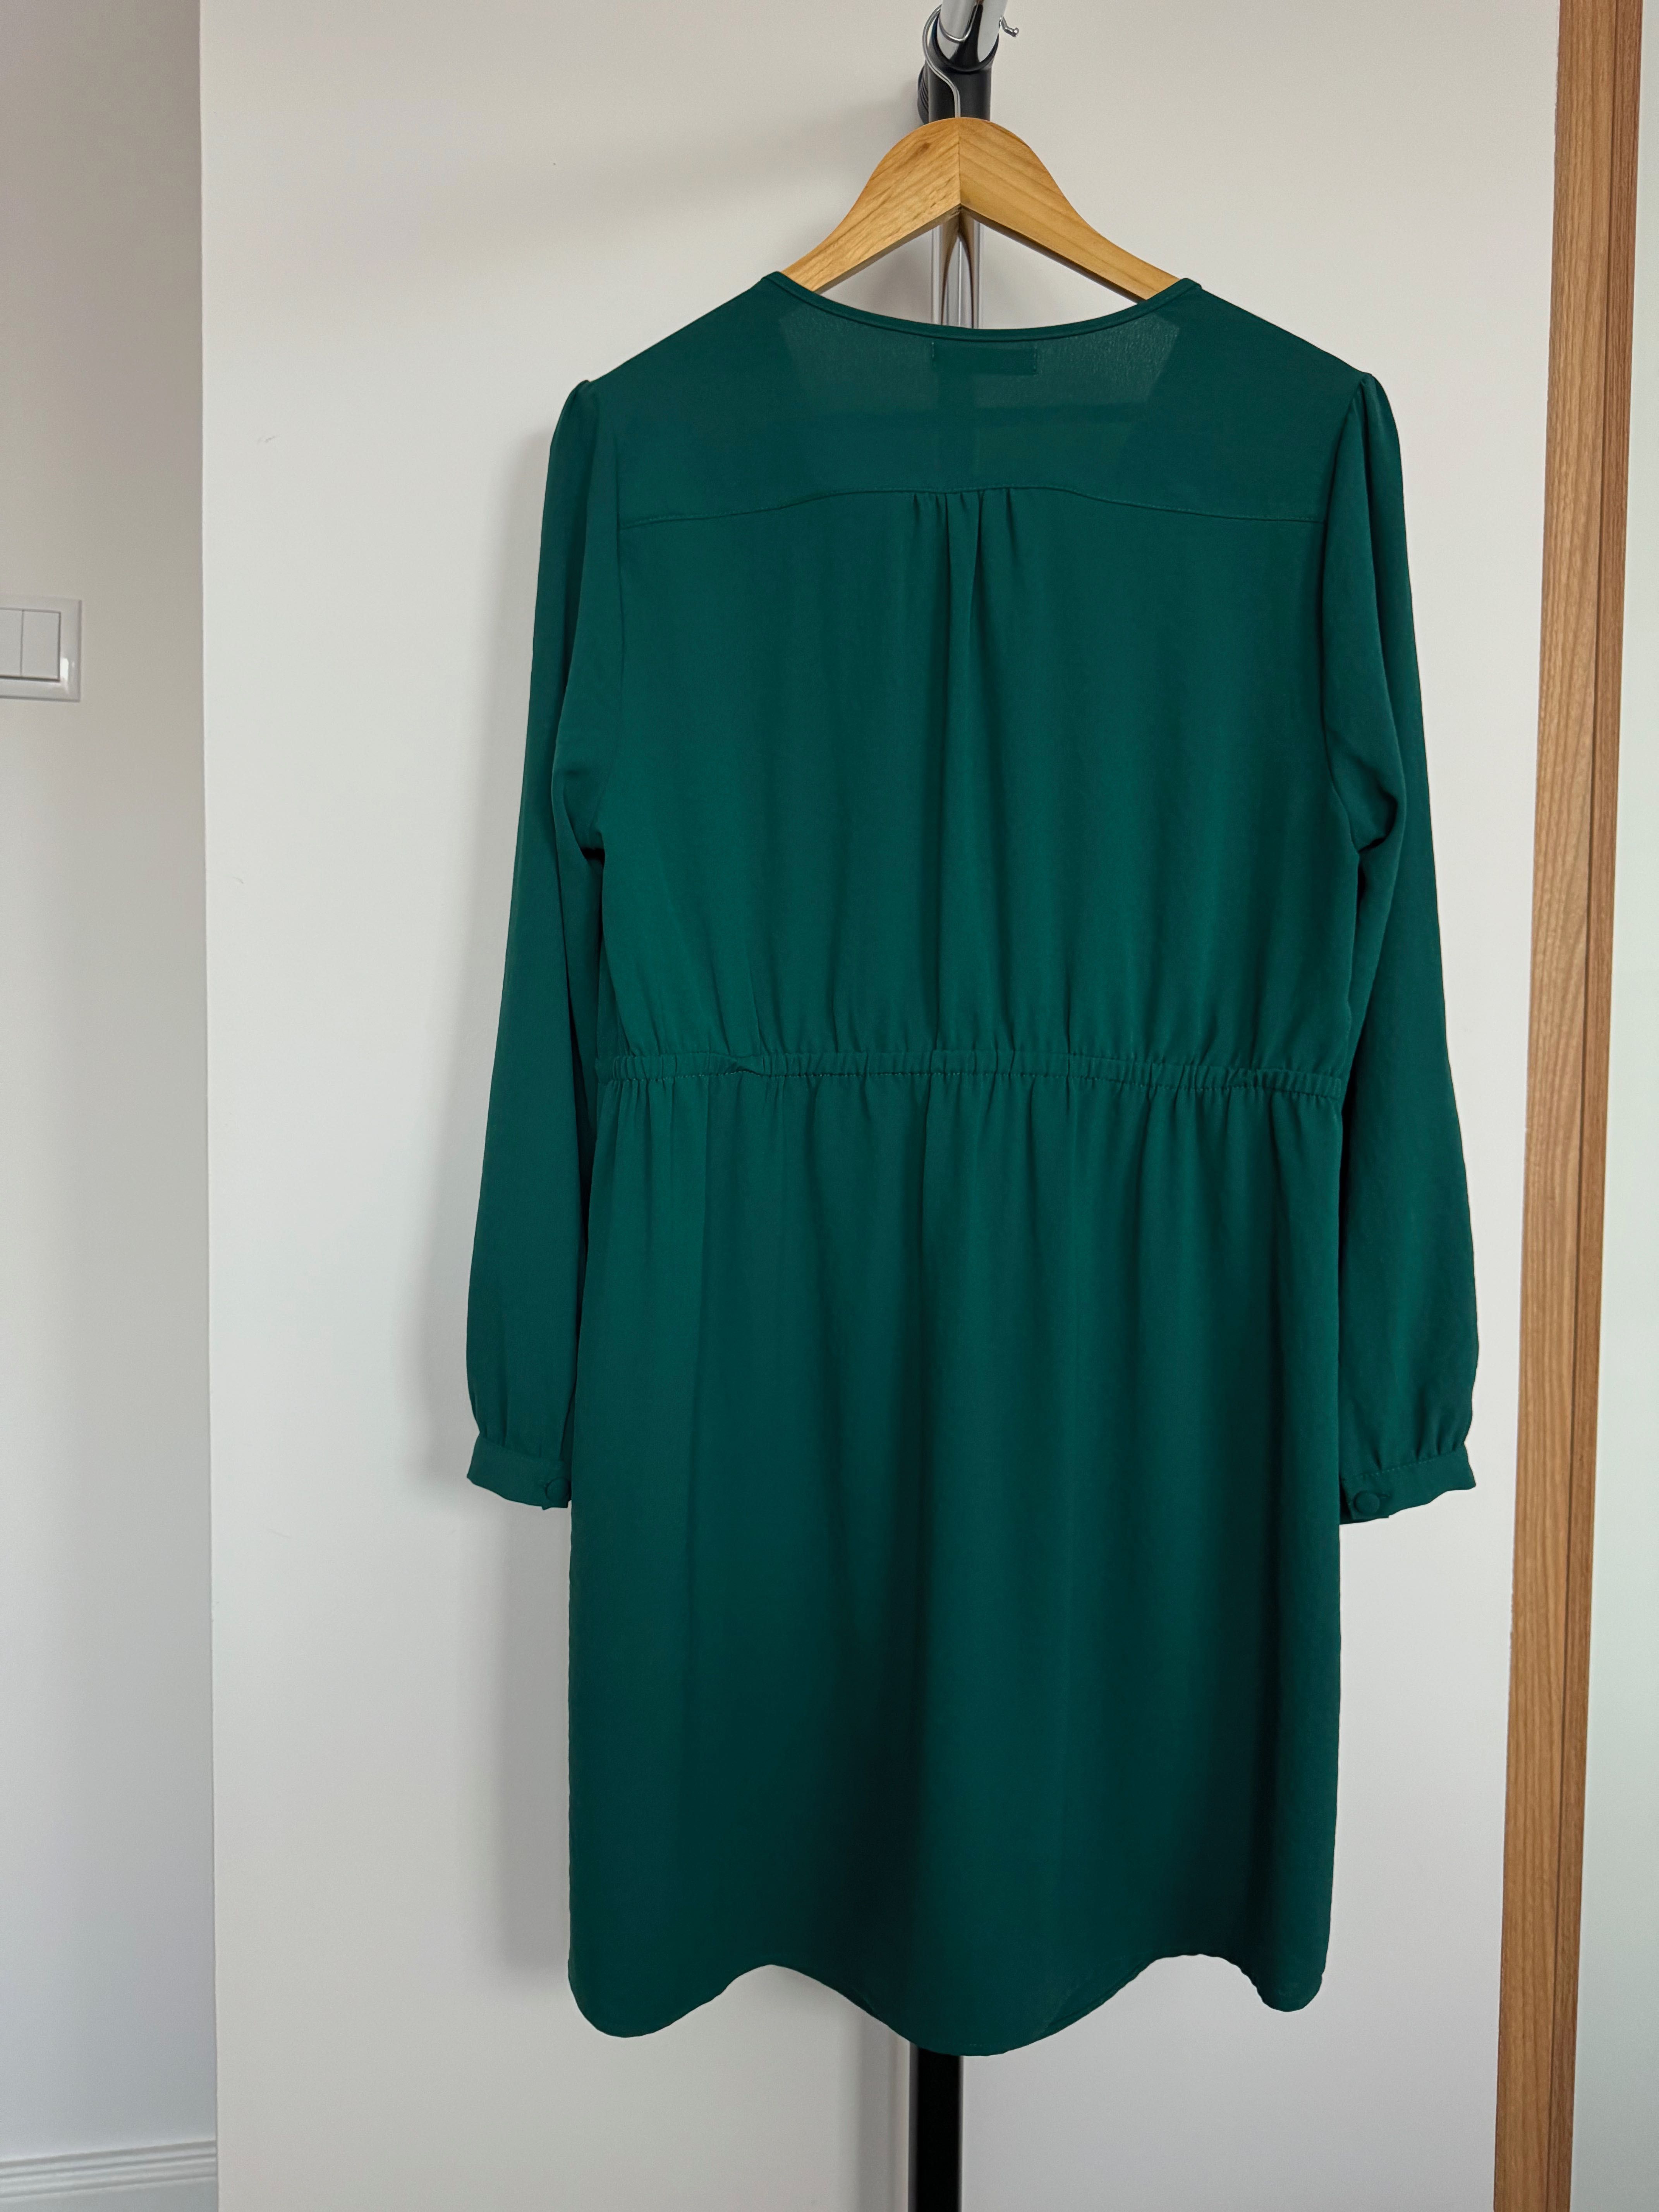 Sukienka Reserved, rozmiar 42, butelkowa zieleń